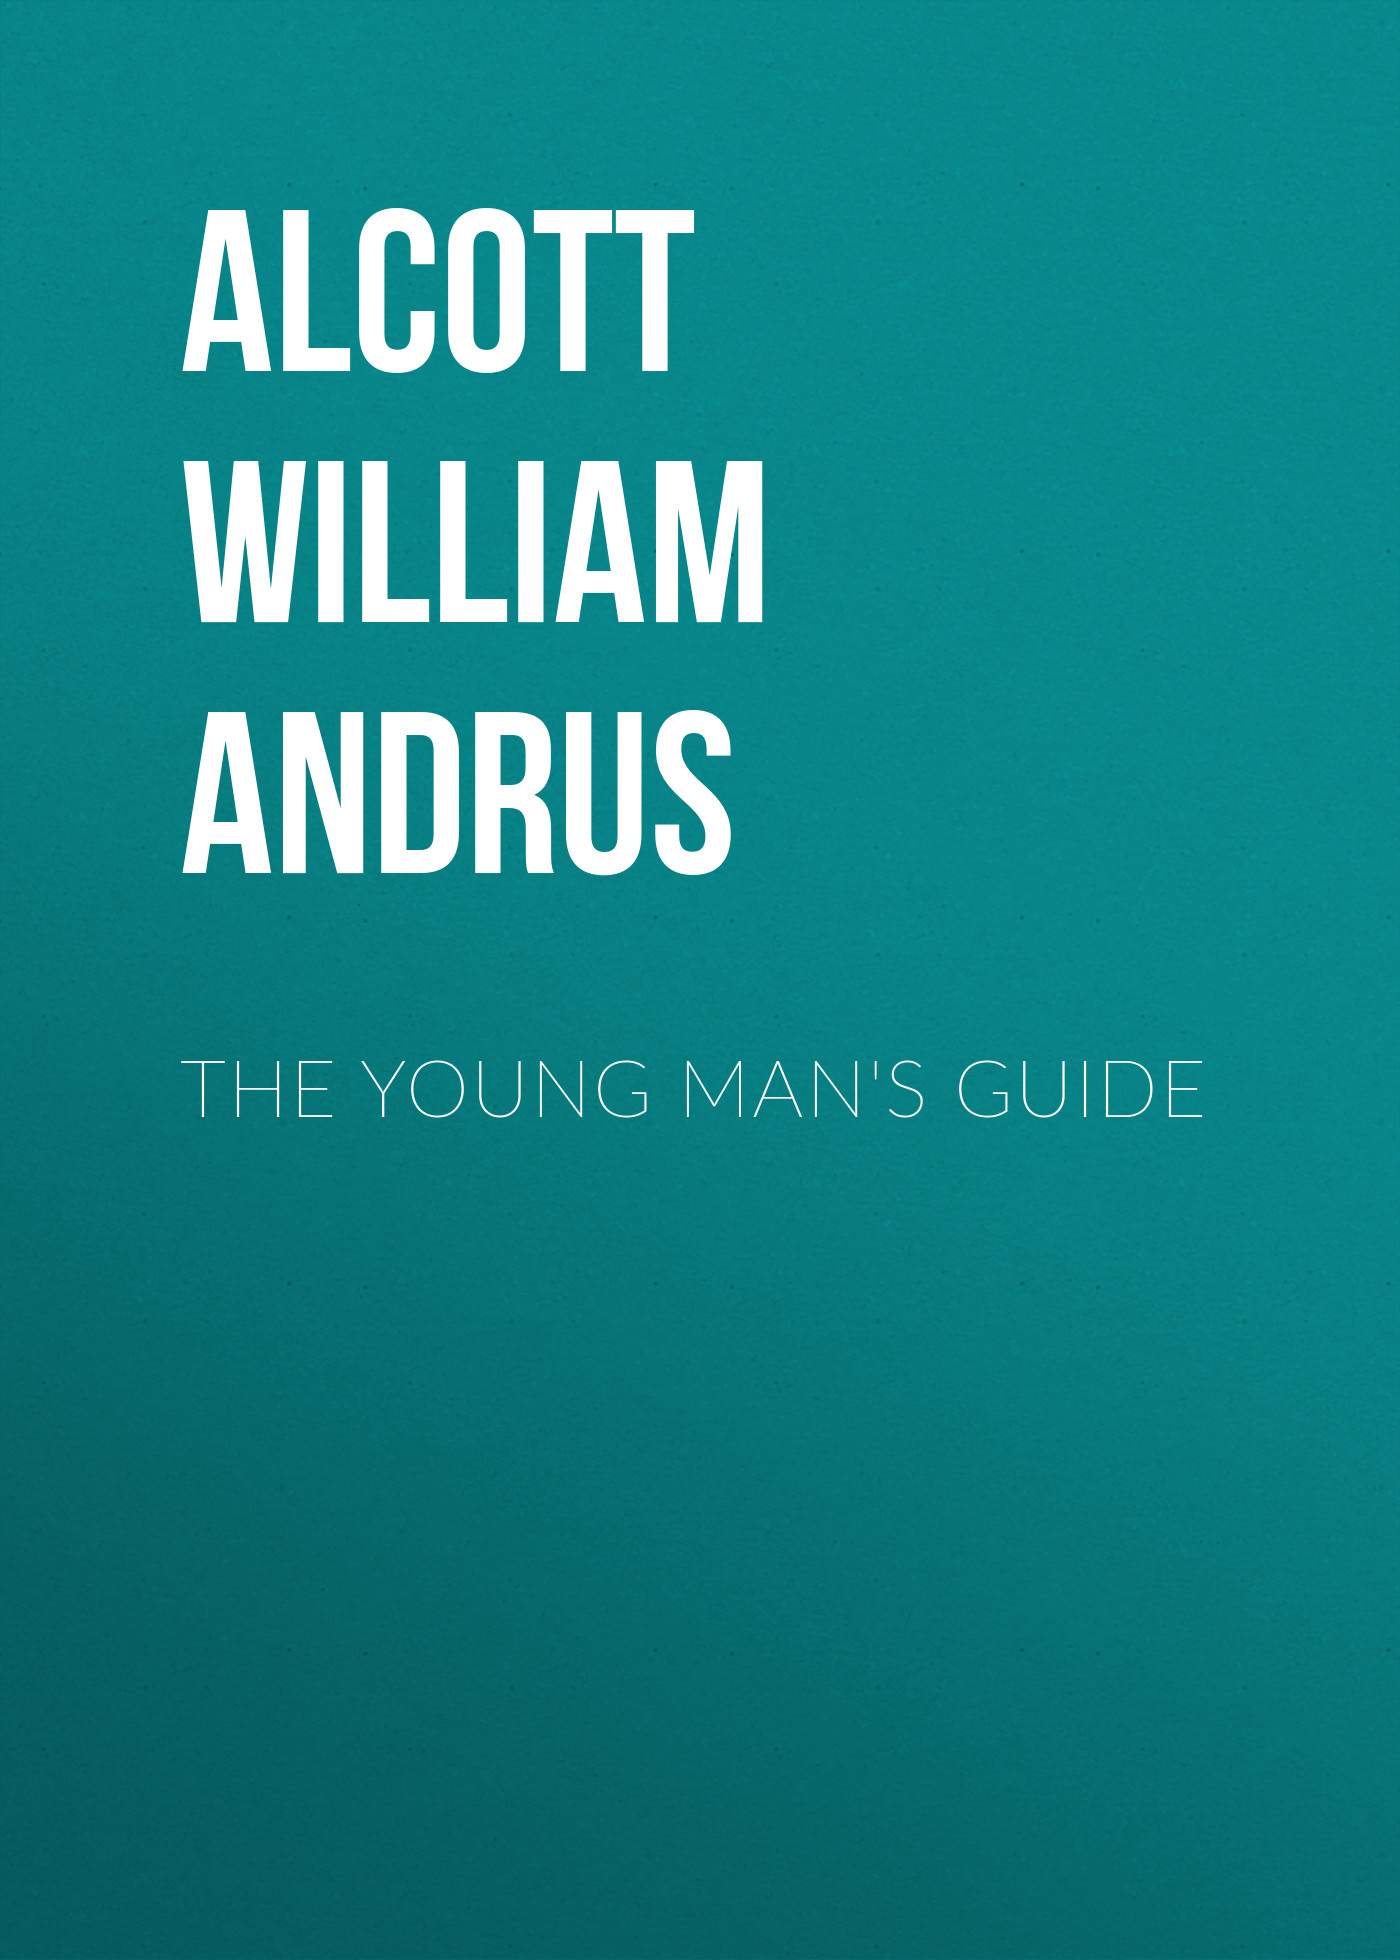 Книга The Young Man's Guide из серии , созданная William Alcott, может относится к жанру Зарубежная классика, Зарубежная эзотерическая и религиозная литература, Философия, Зарубежная психология, Зарубежная старинная литература. Стоимость электронной книги The Young Man's Guide с идентификатором 36362406 составляет 0 руб.